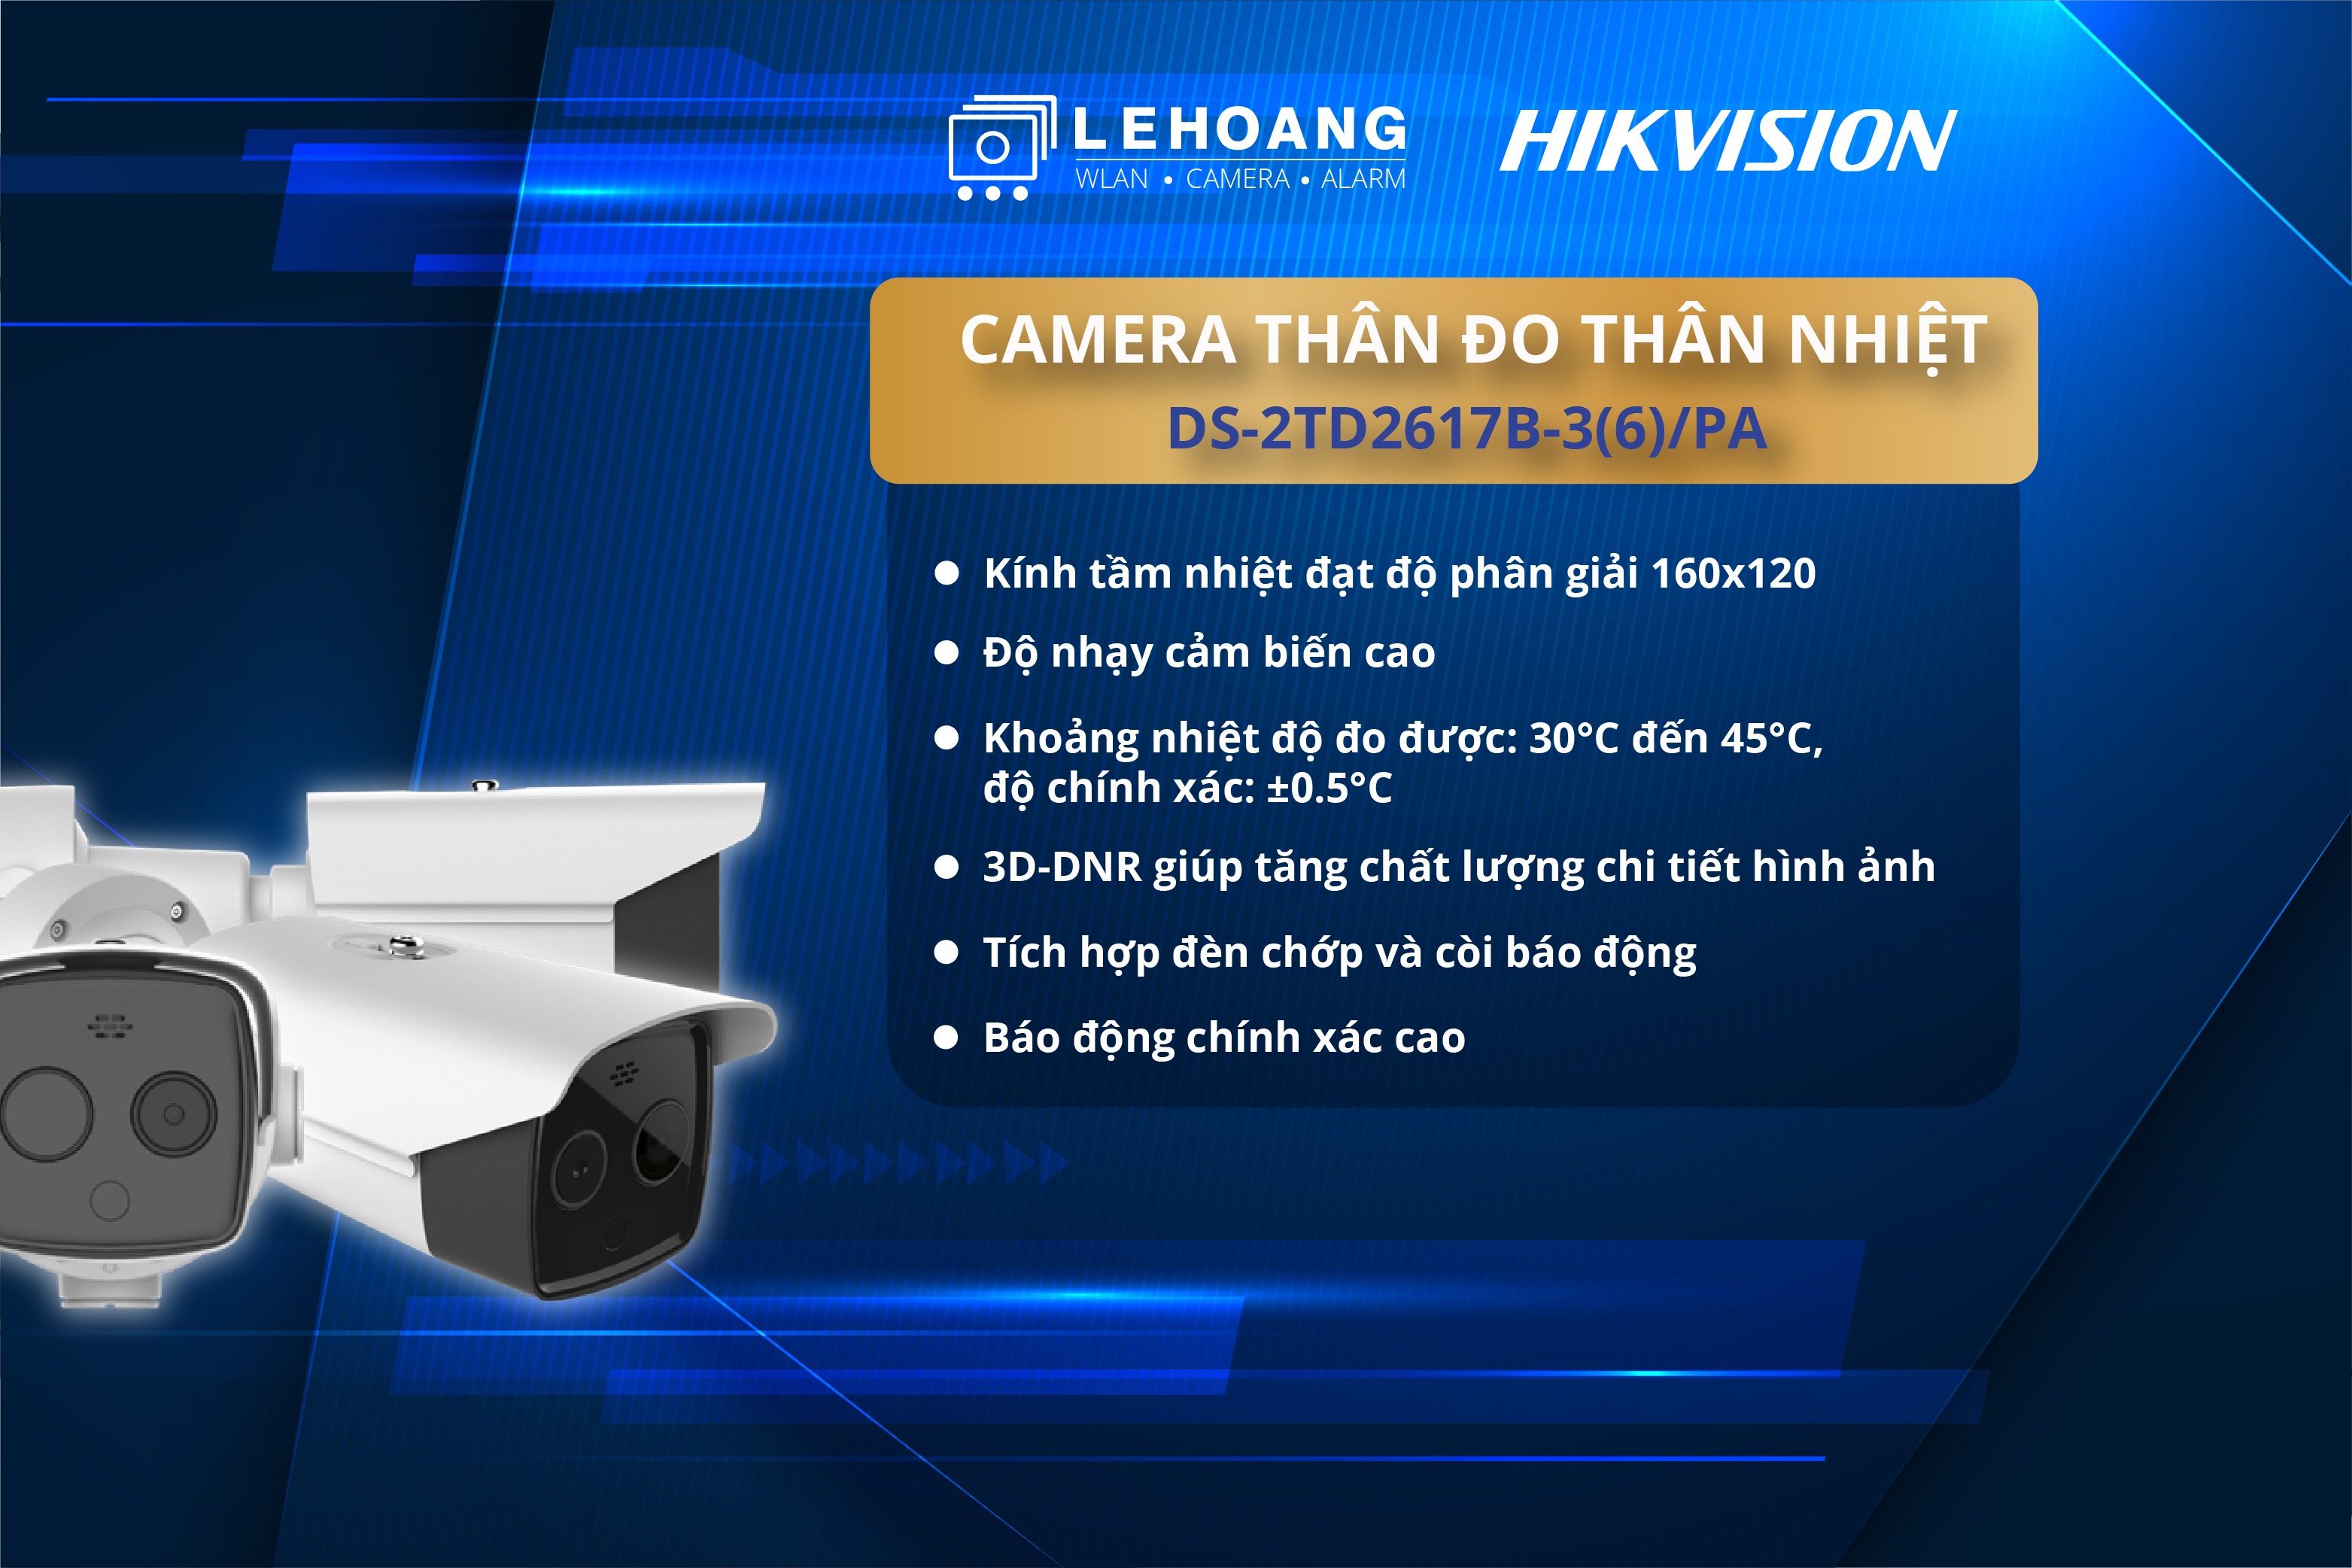 camera-than-nhiet-bullet-hikvision-lehoang